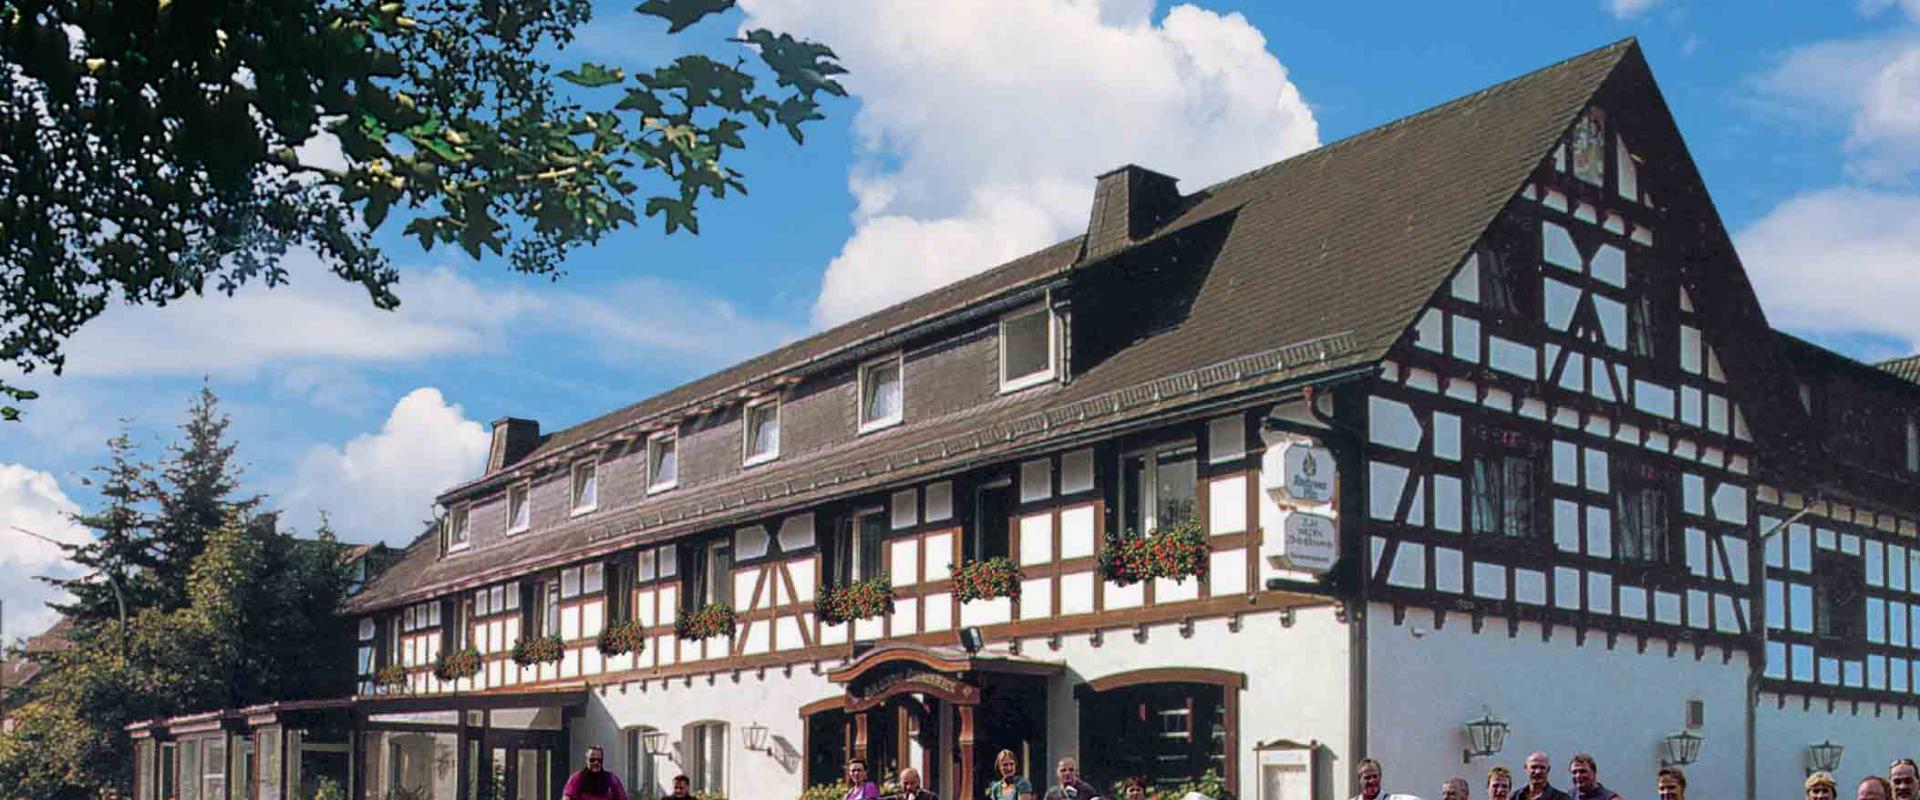 11736 Biker Hotel Zum wilden Zimmermann im Sauerland.jpg